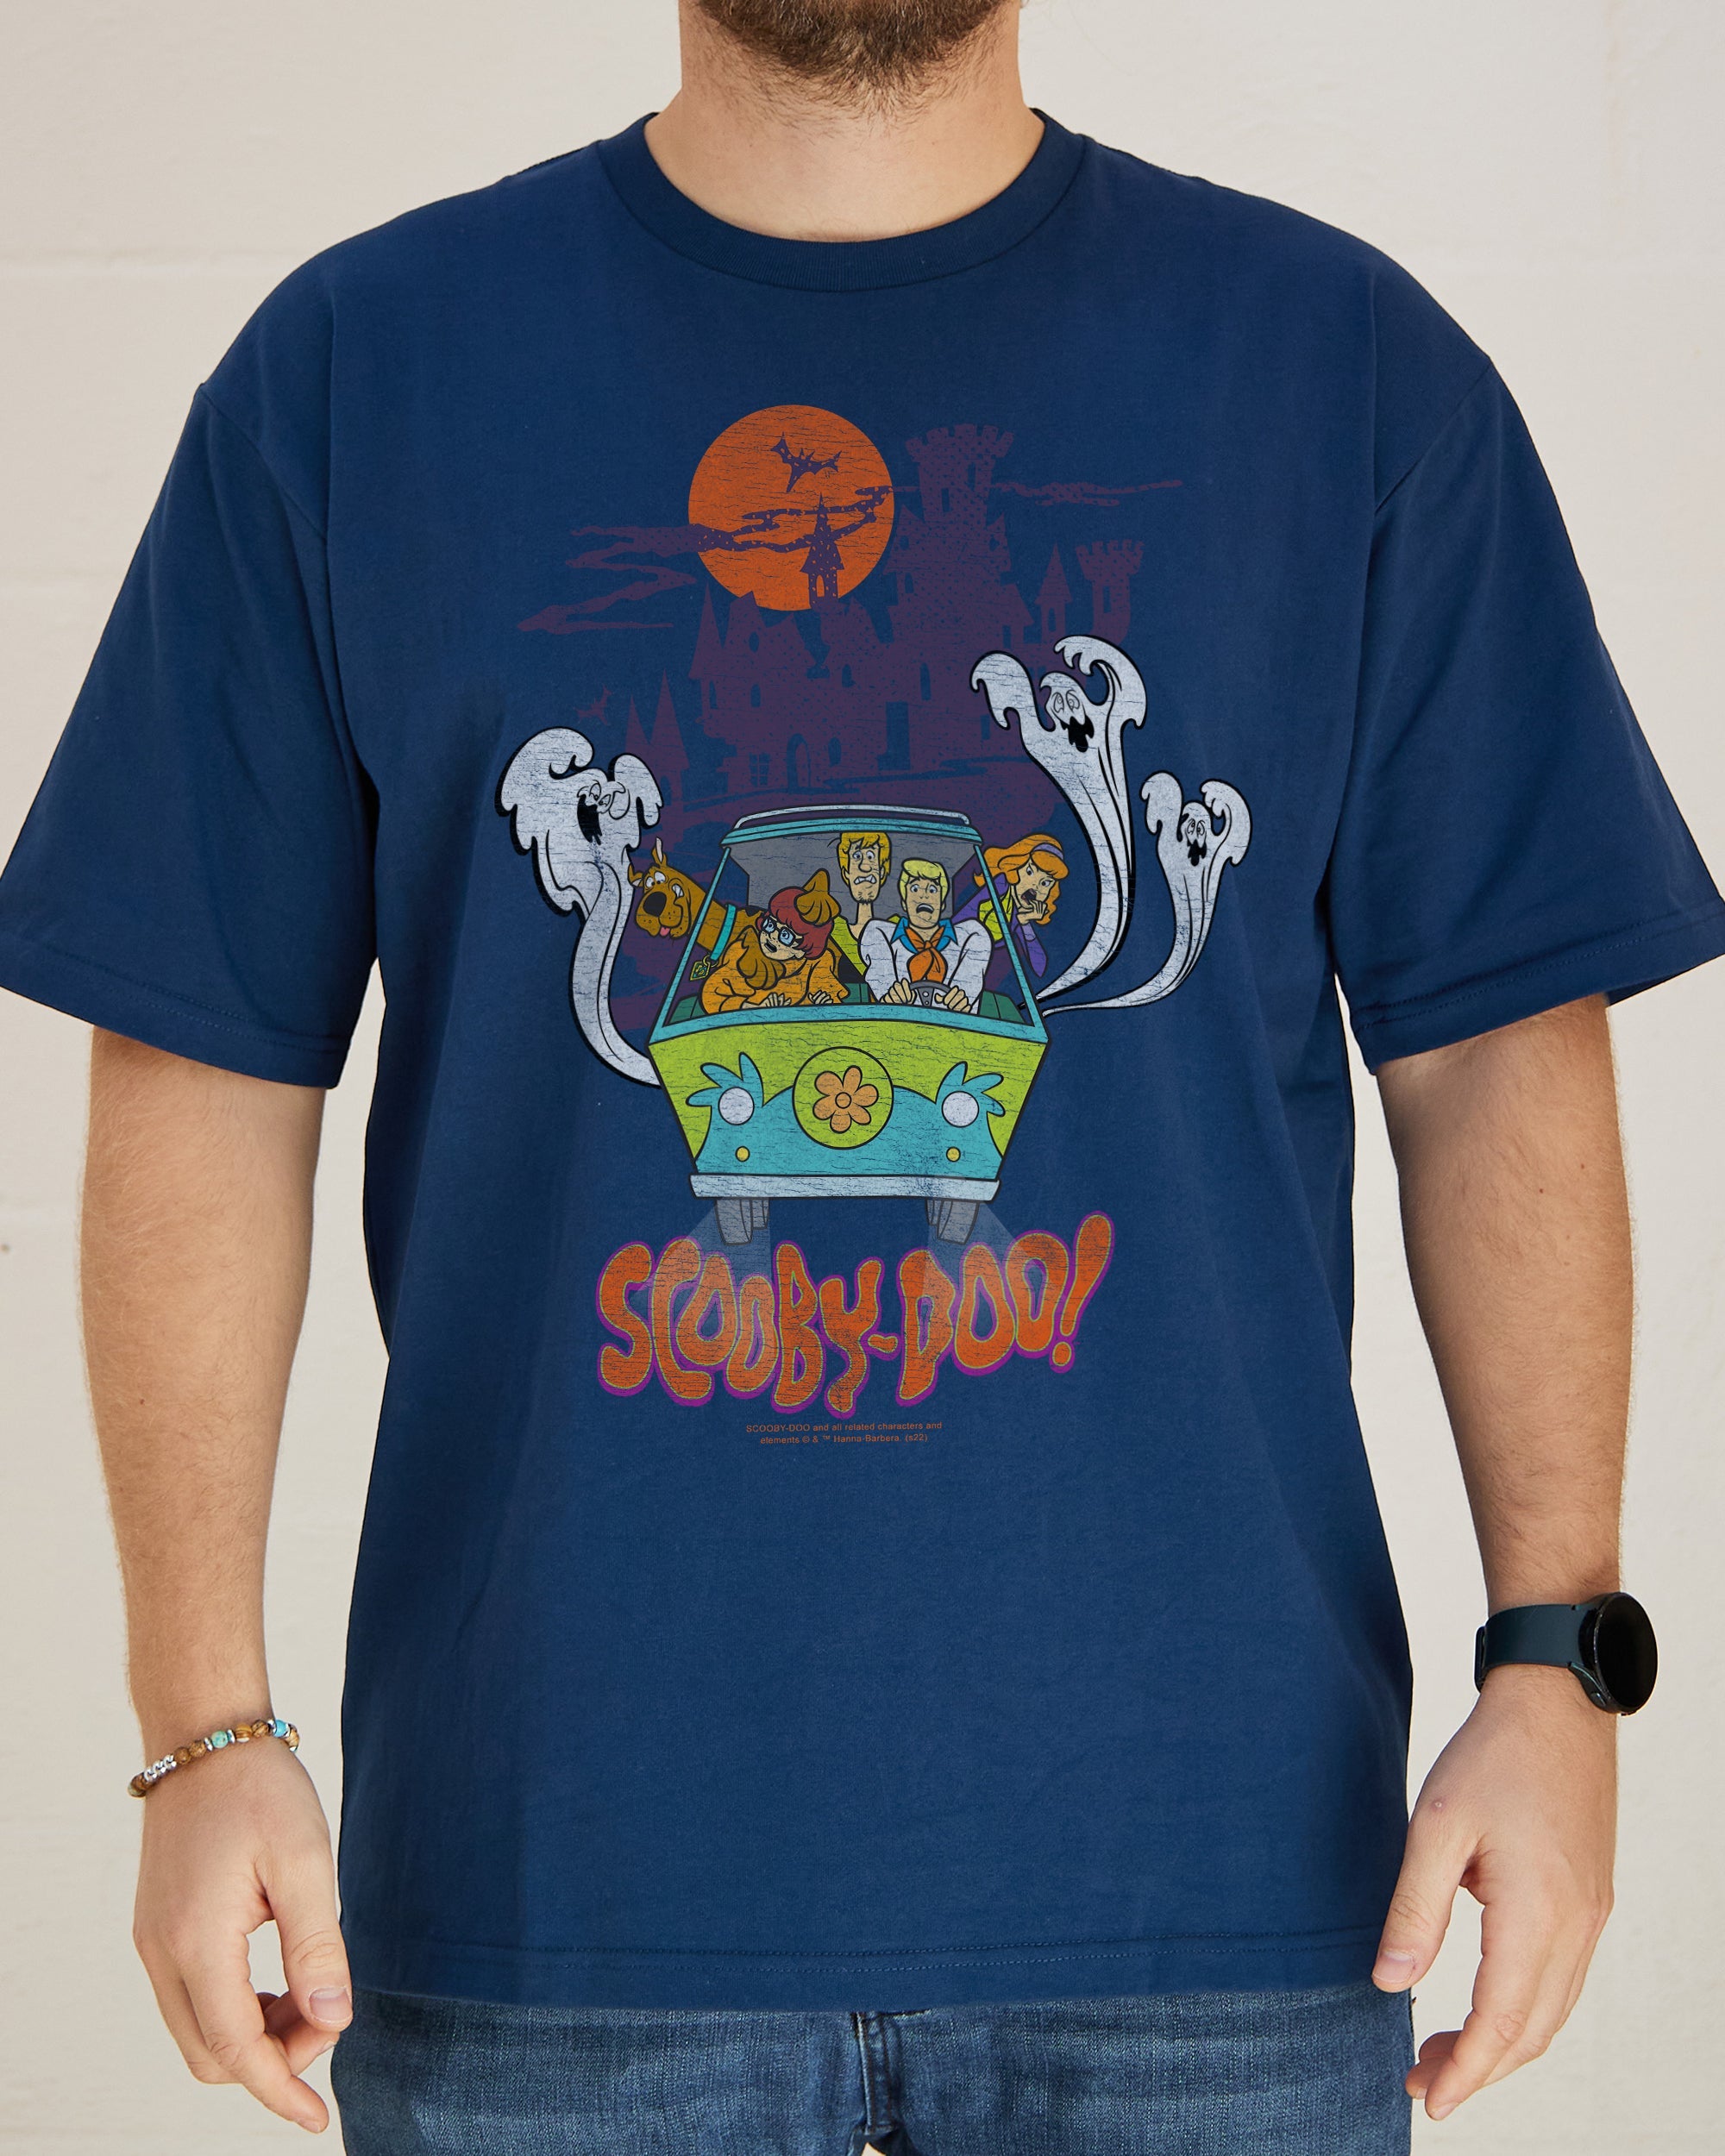 Scooby-Doo T-Shirt Australia Online Navy